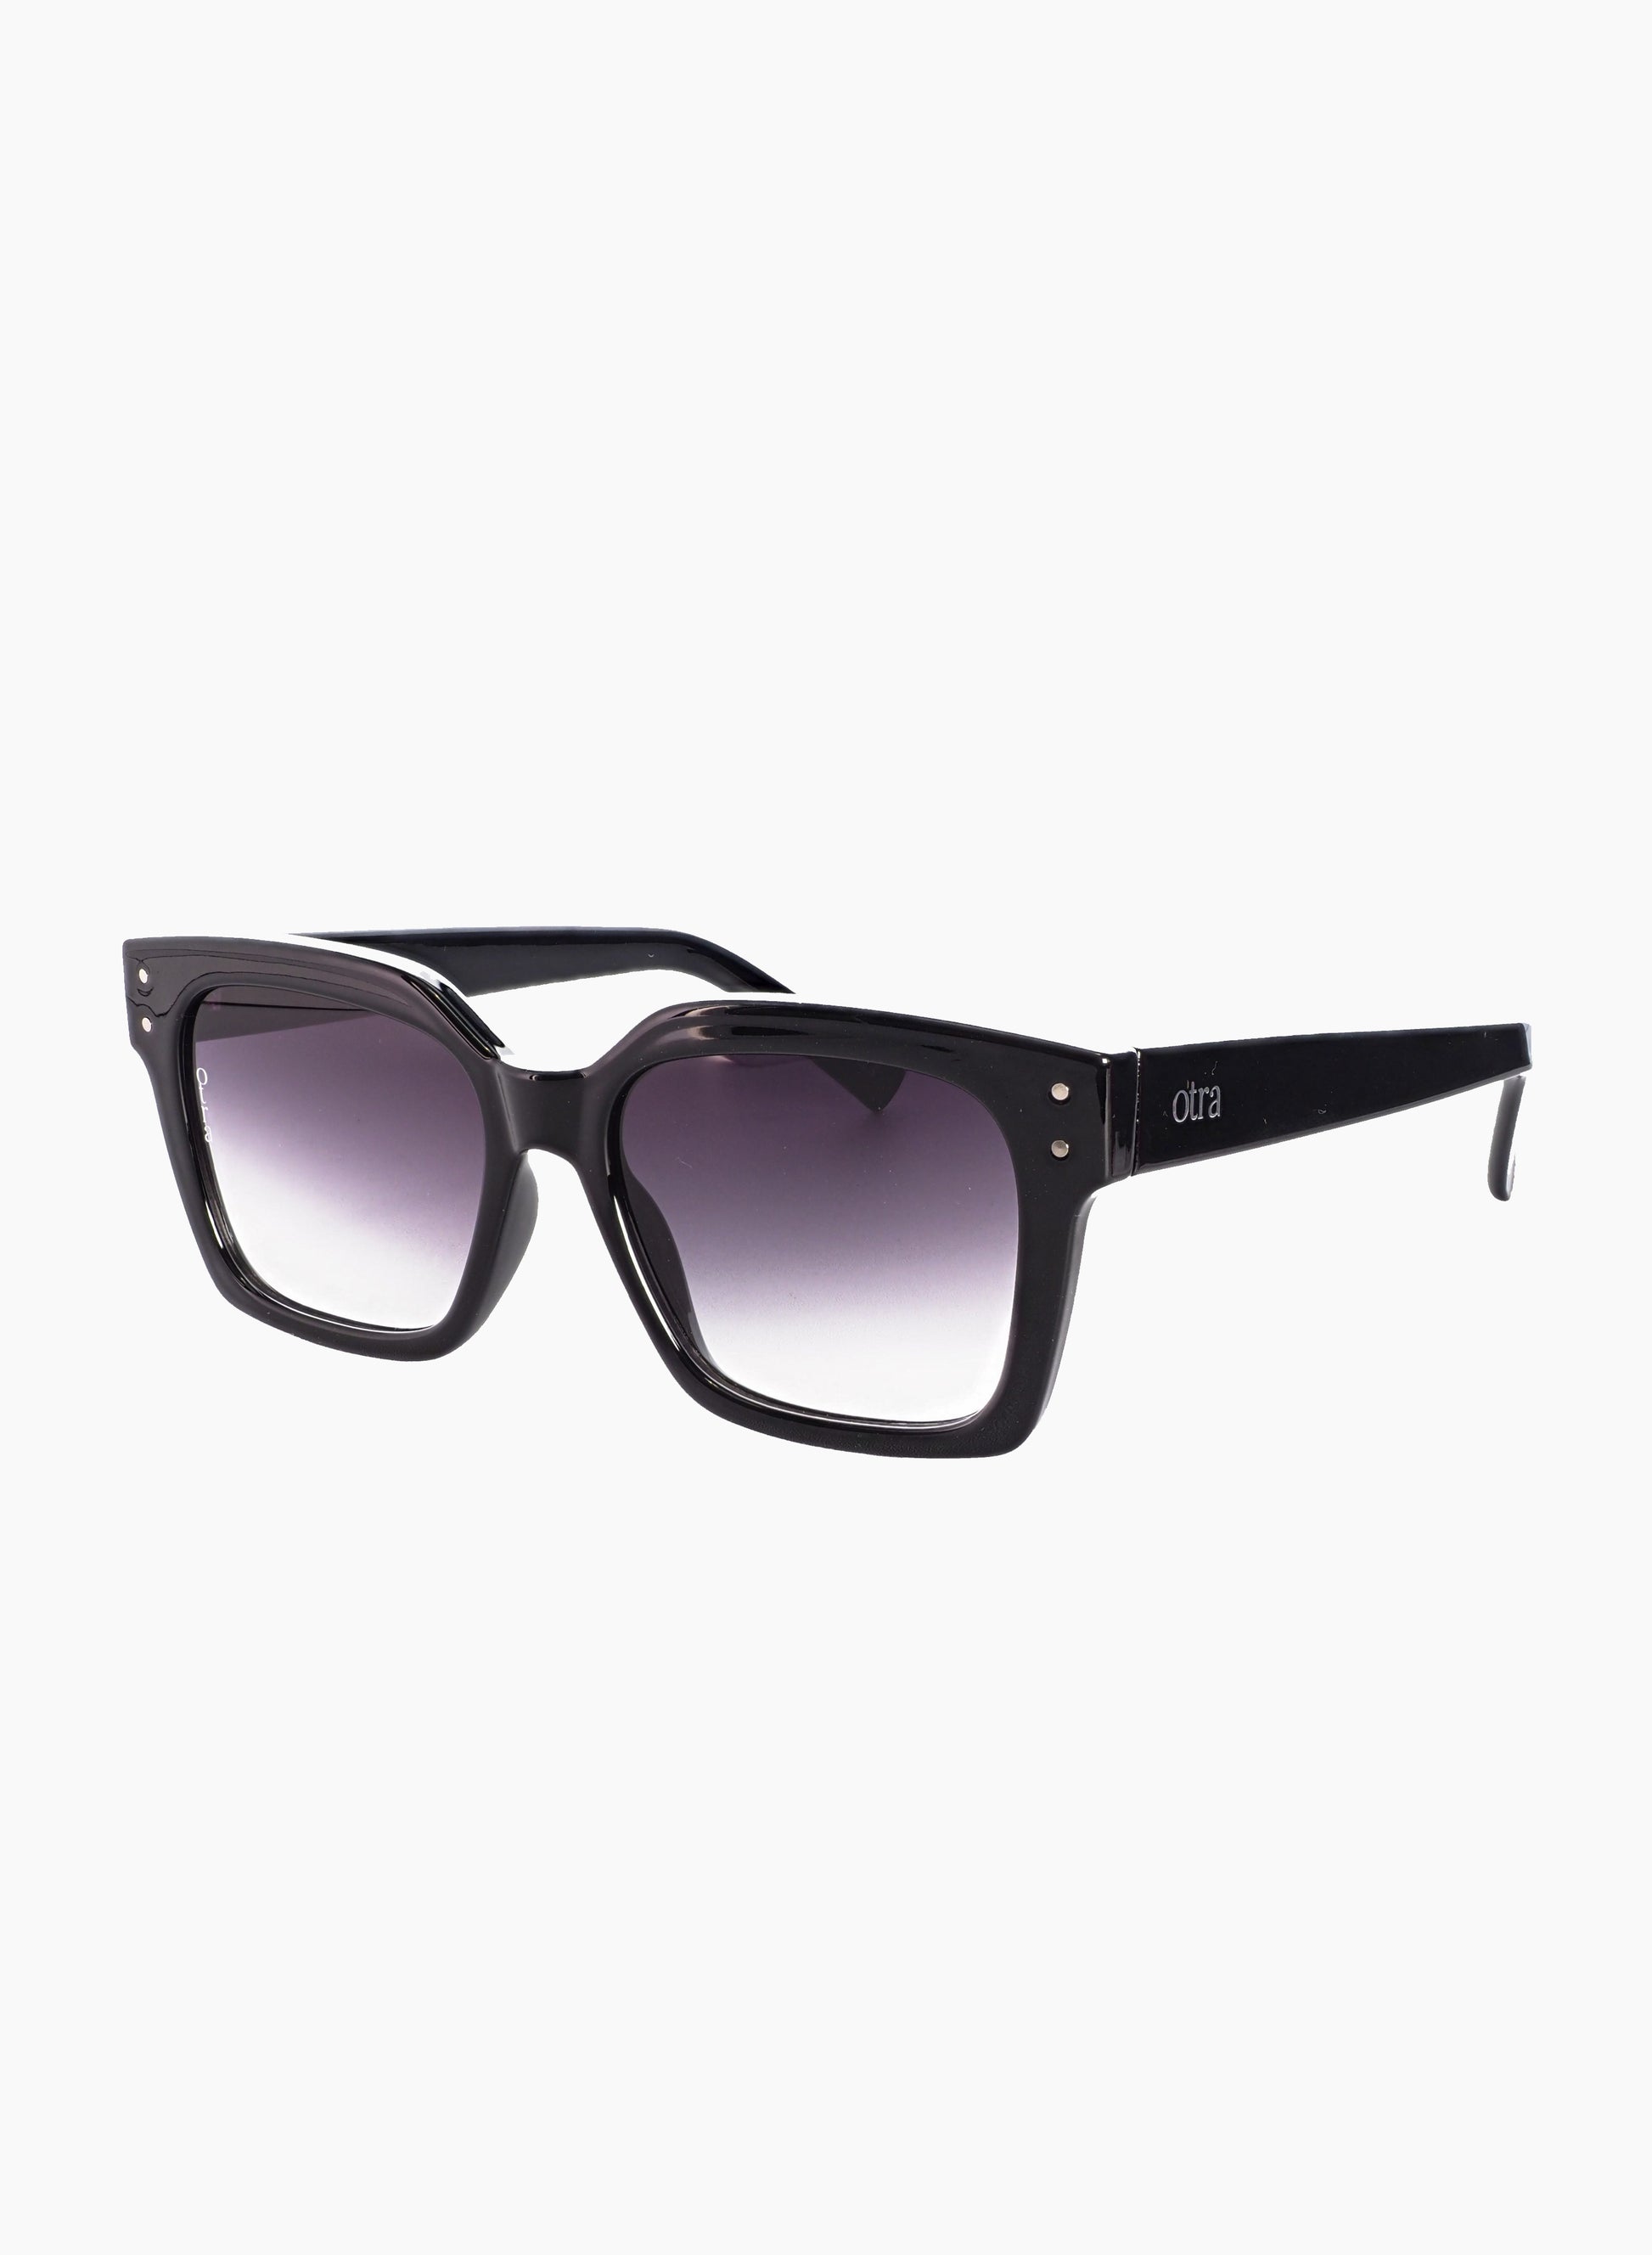 Side view of Ora square sunglasses in black